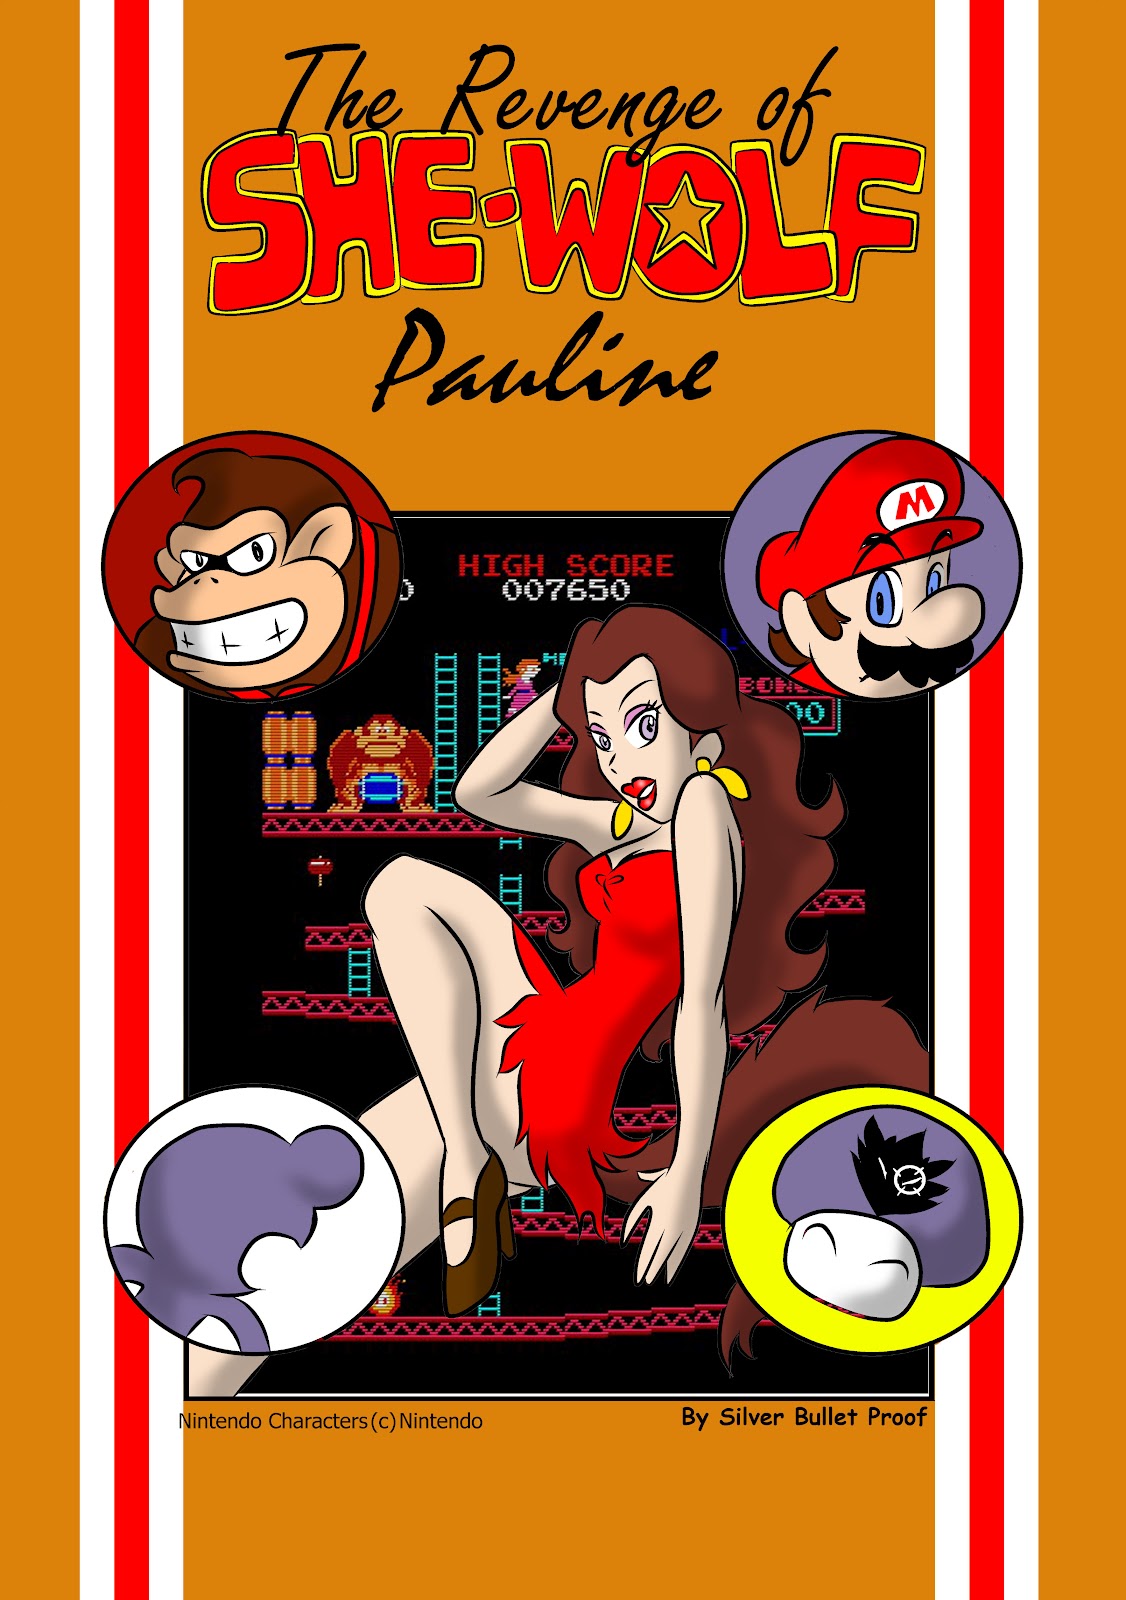 Mario pauline porn comic